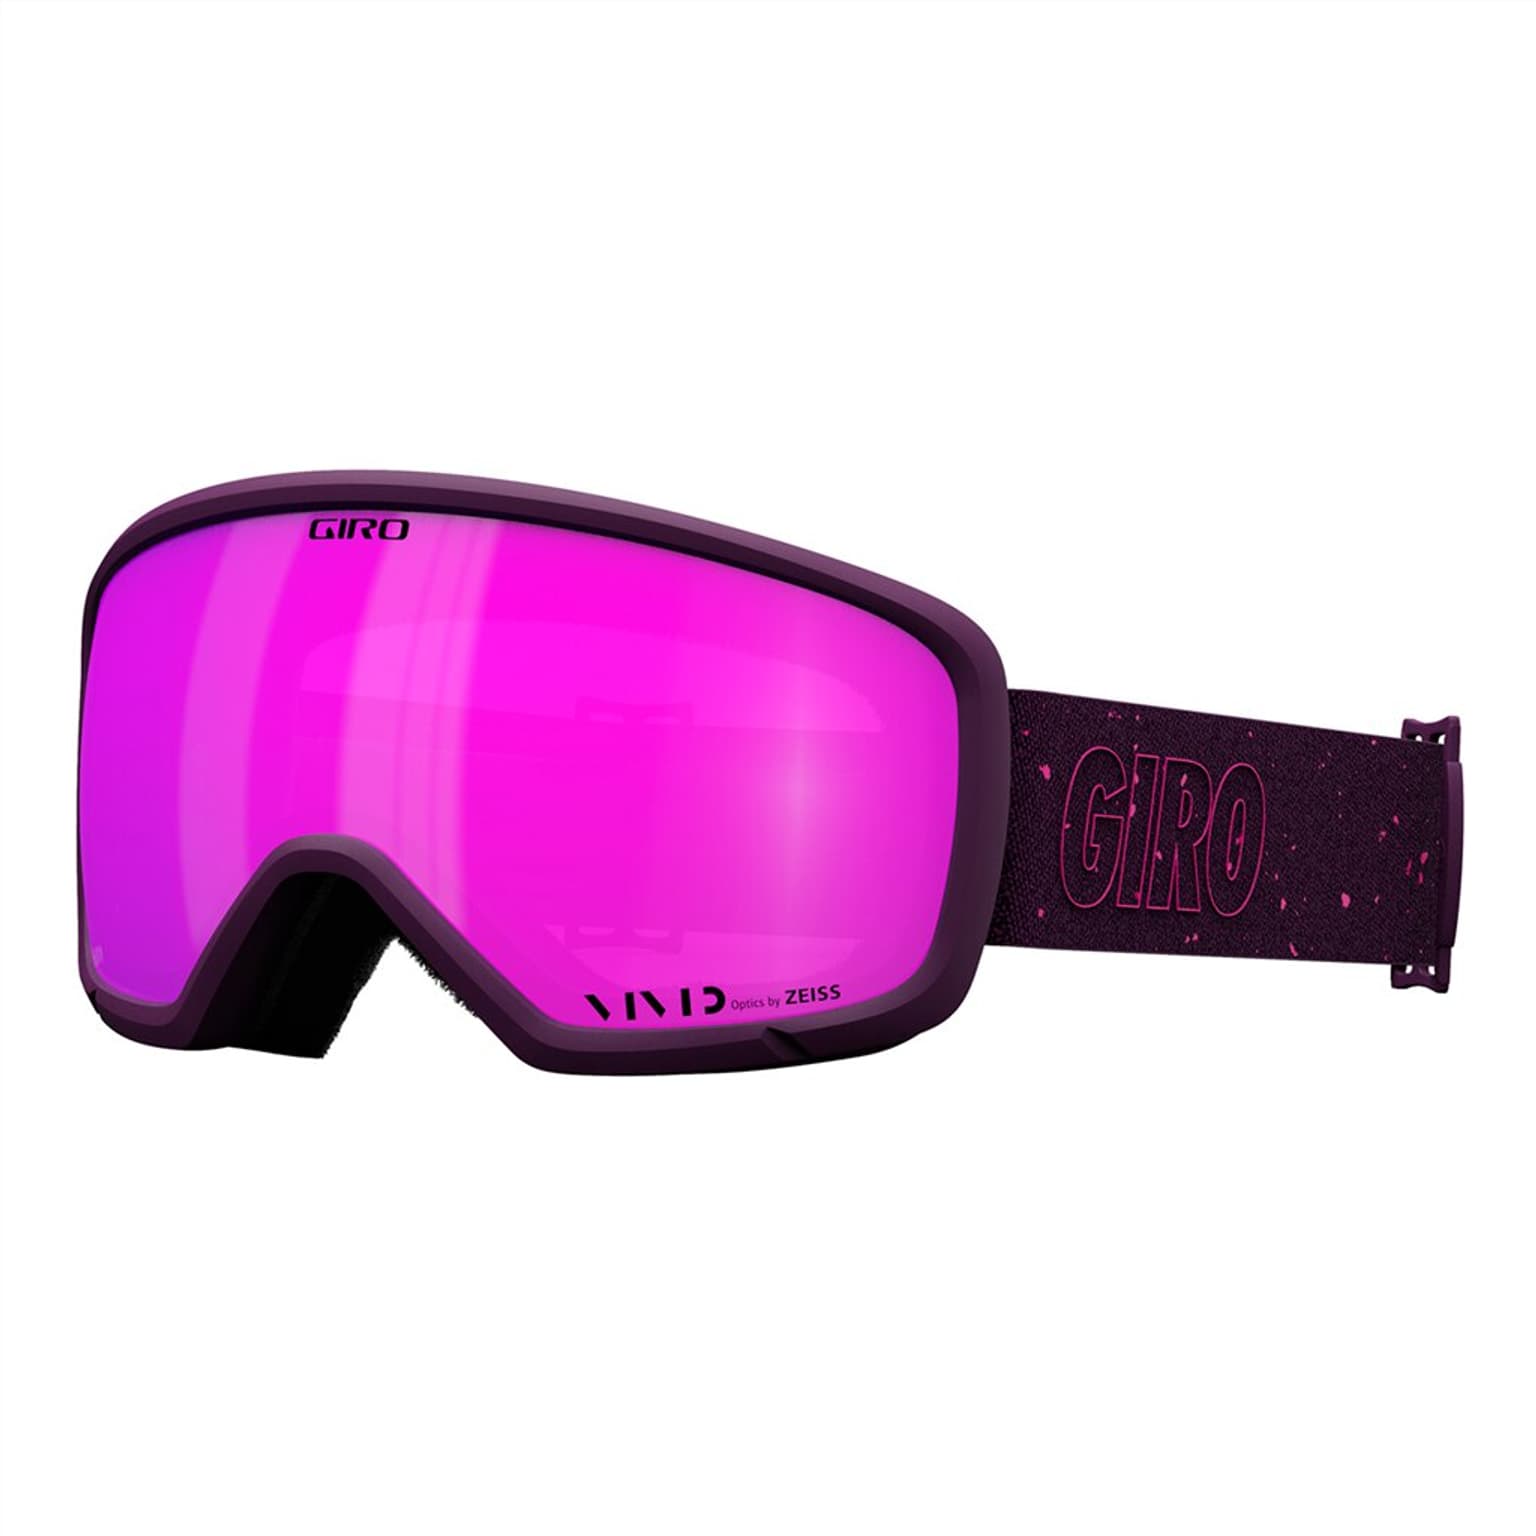 Giro Giro Millie VIVID Skibrille violett 1